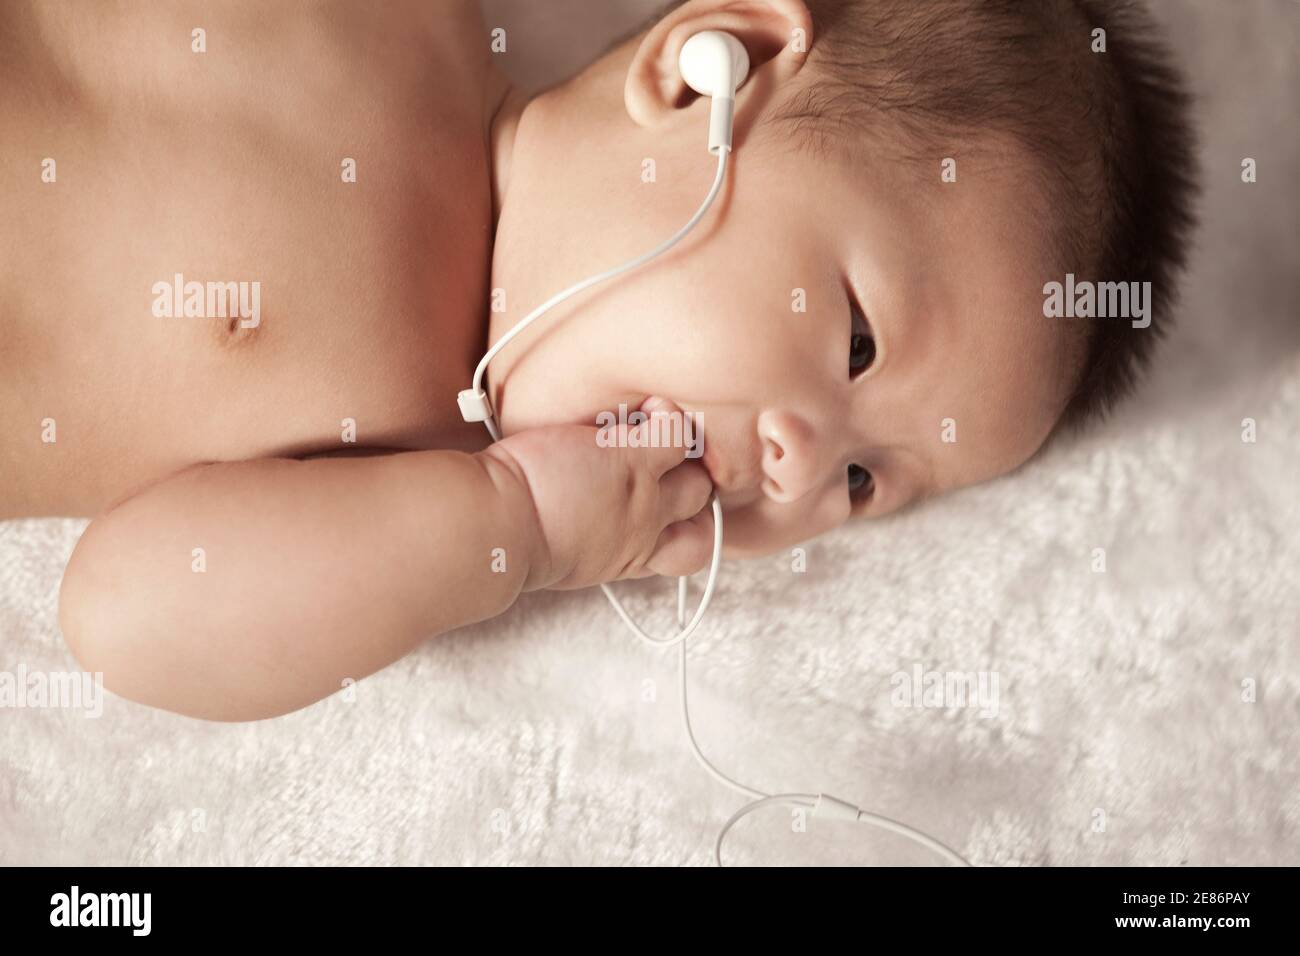 Bébé avec un écouteur photo de haute qualité Banque D'Images